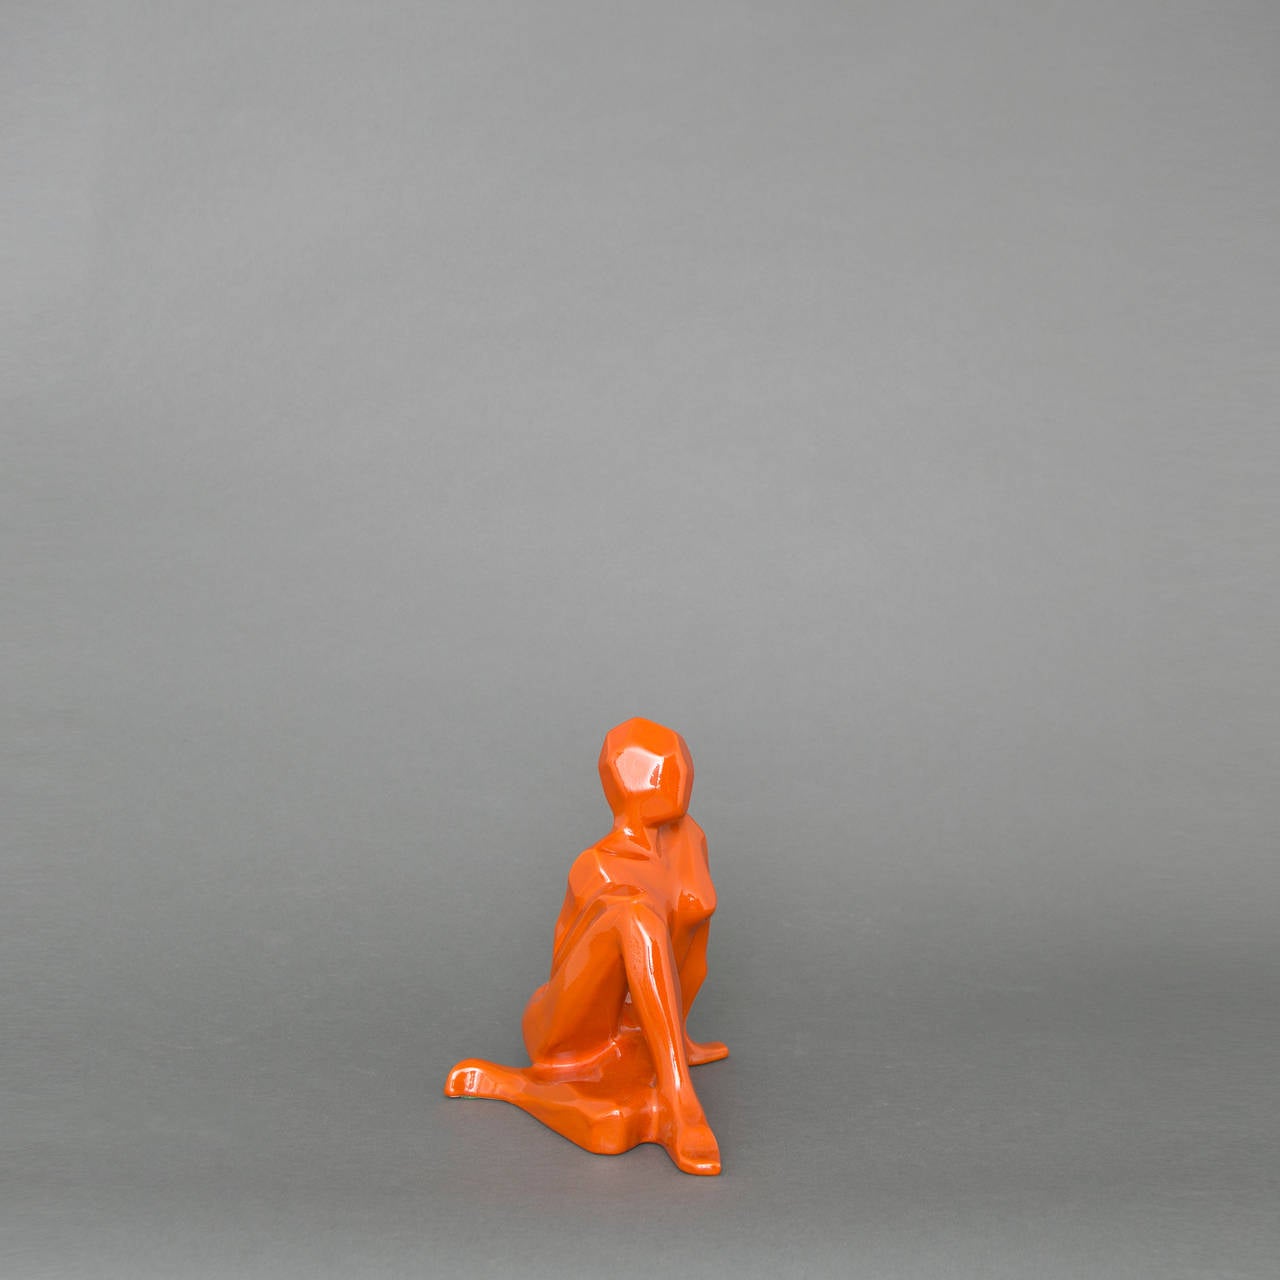 Cubist Jaru female nude sculpture in a rich orange glaze.